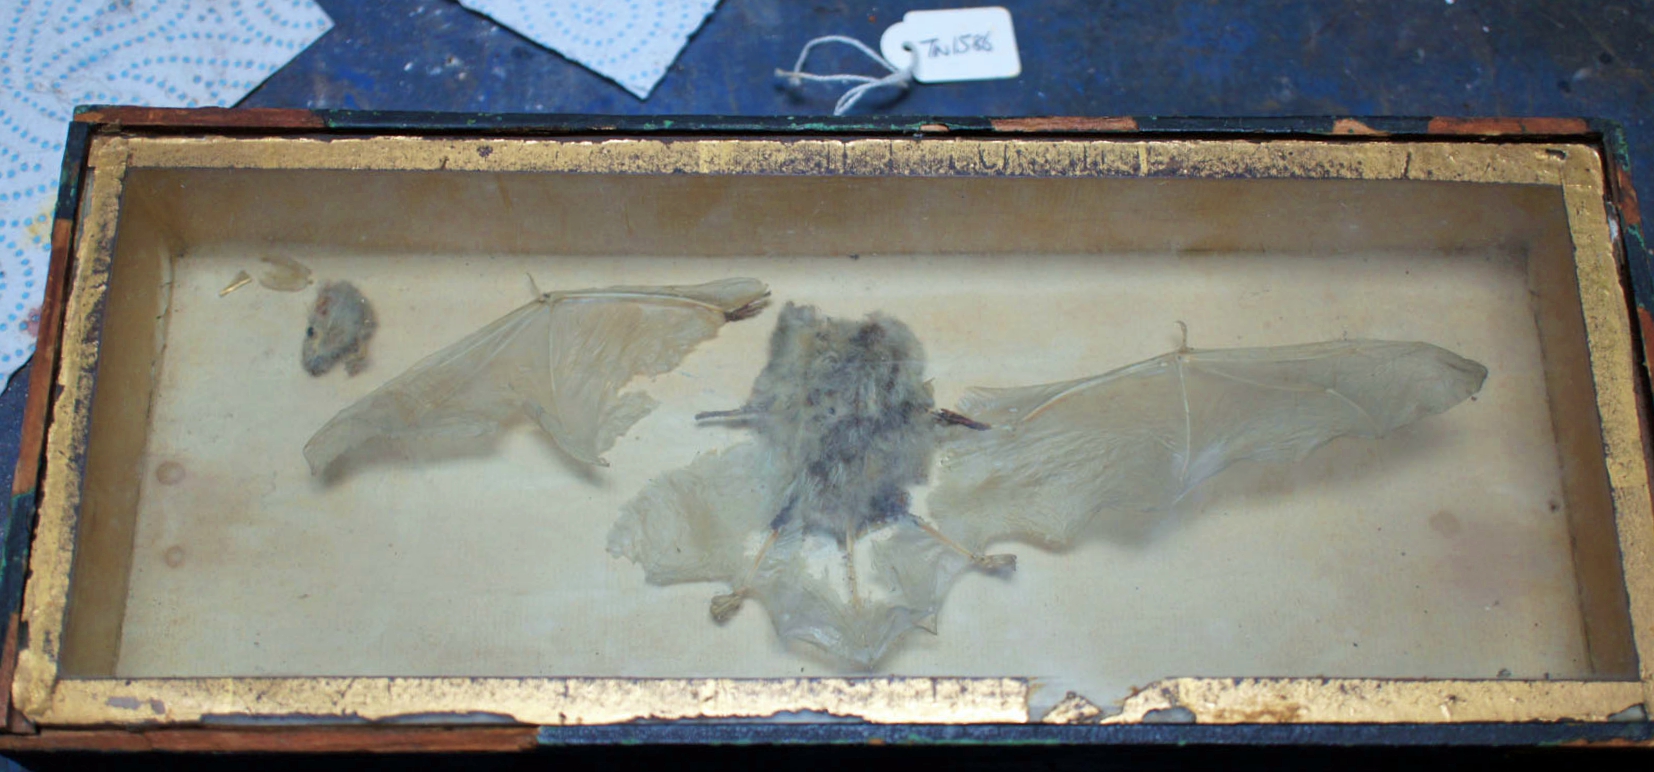 Taxidermy Bat in box 1.jpg